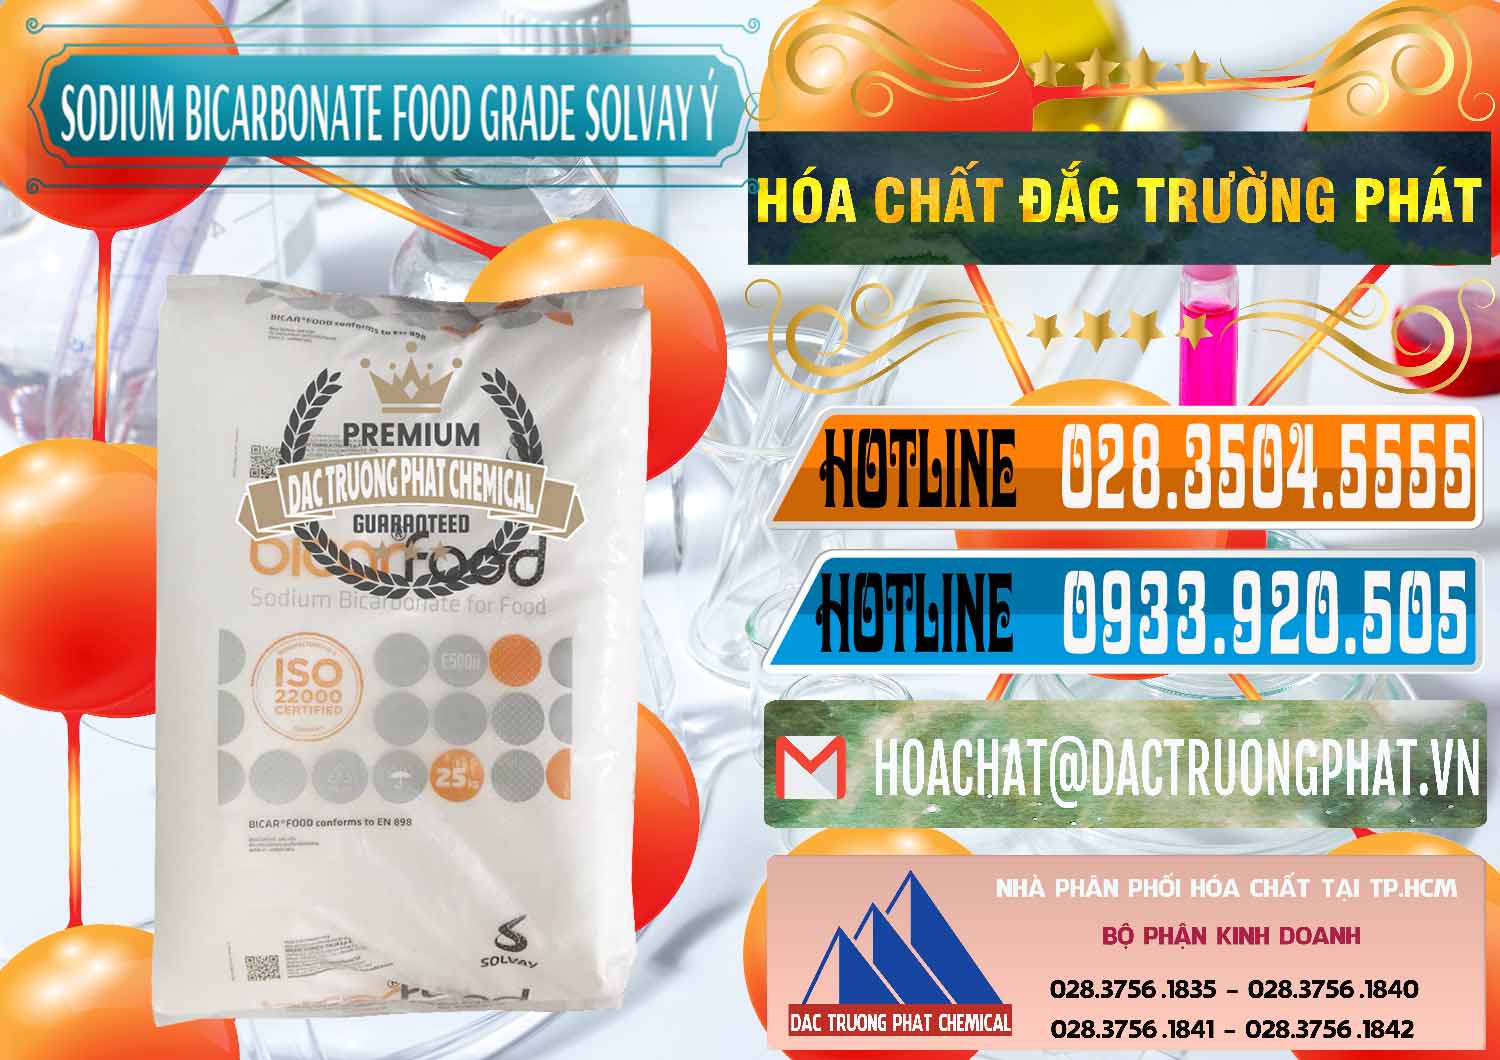 Cty chuyên bán & cung cấp Sodium Bicarbonate – Bicar NaHCO3 Food Grade Solvay Ý Italy - 0220 - Nhập khẩu _ phân phối hóa chất tại TP.HCM - stmp.net